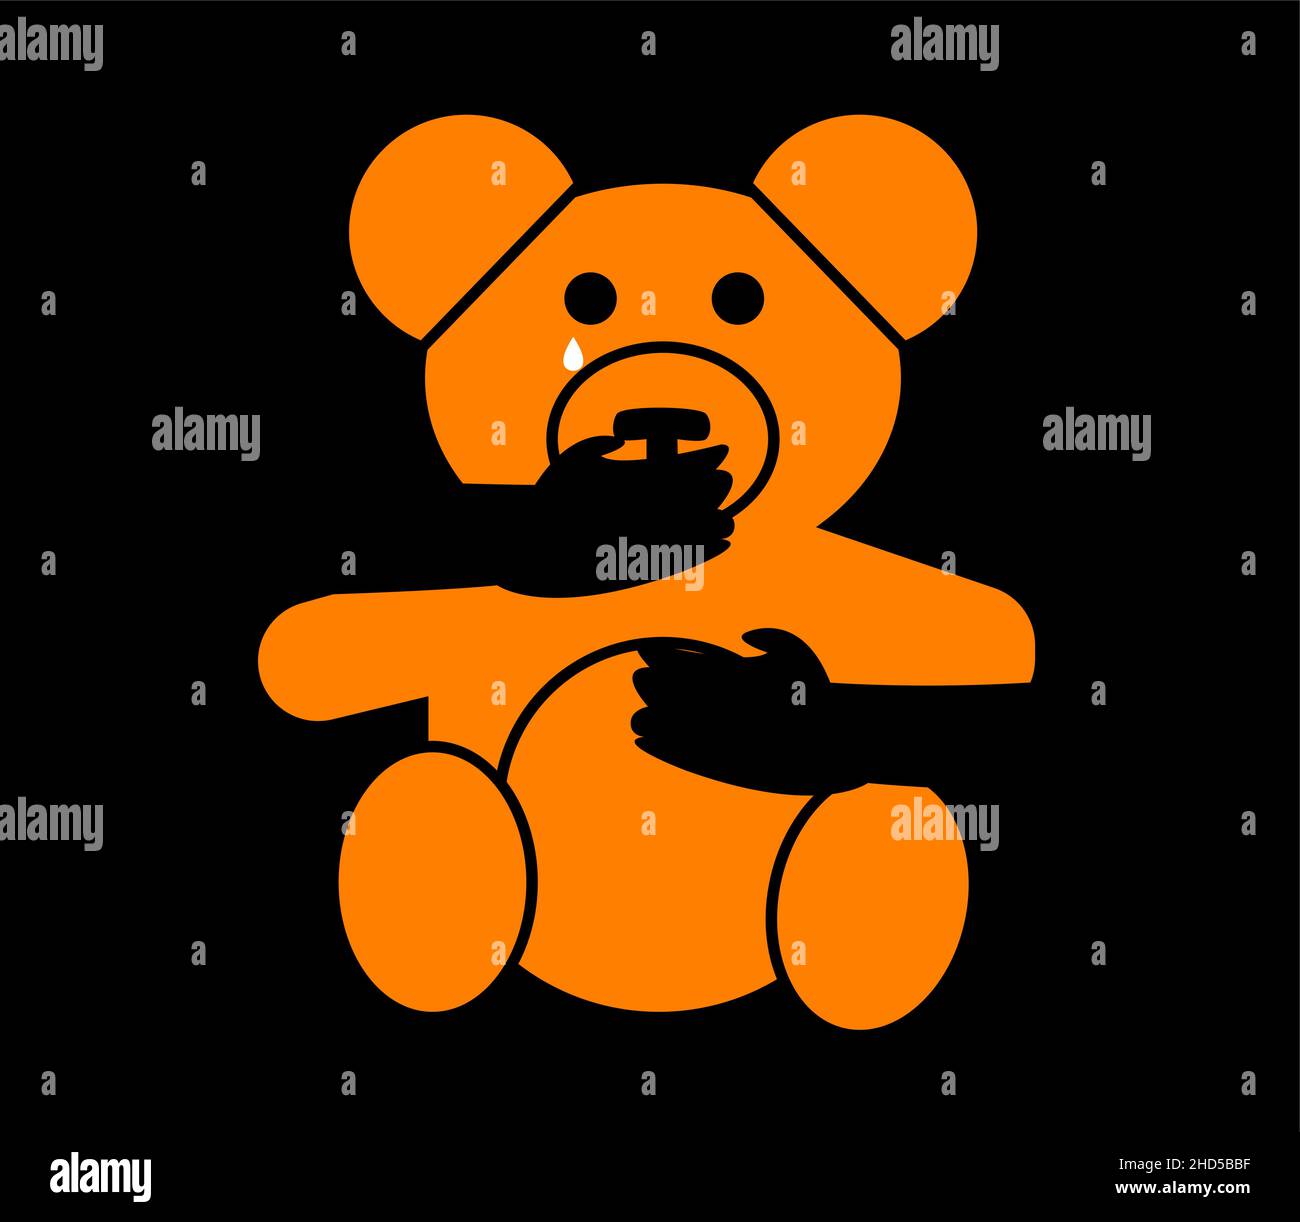 Illustrazione di un orsacchiotto rapito e di fronte alla violenza. Illustrazione concettuale del rapimento dei bambini Illustrazione Vettoriale